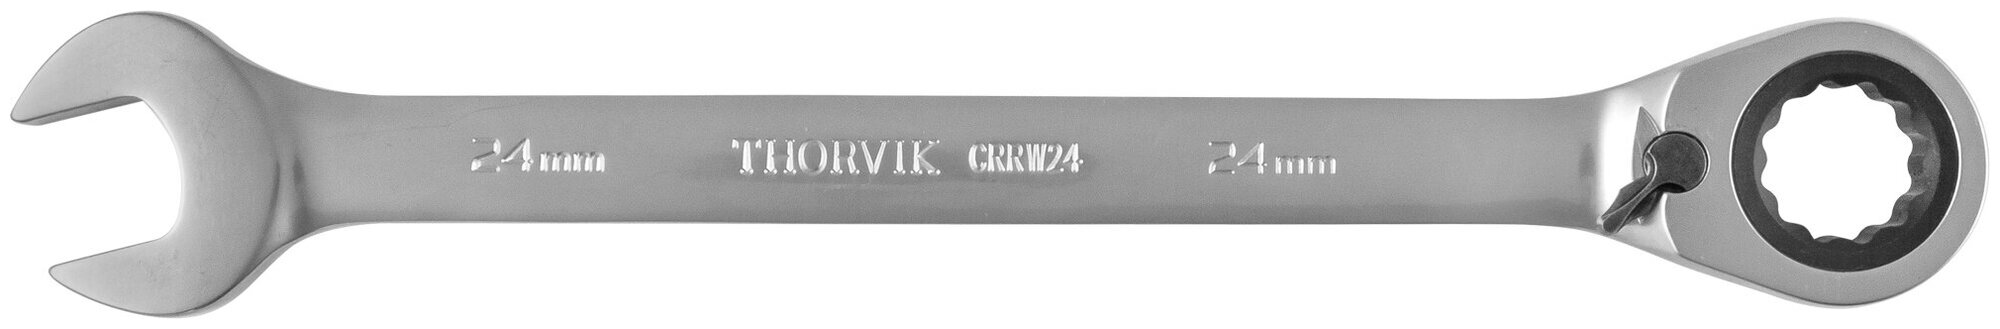 CRRW24 Ключ гаечный комбинированный трещоточный с реверсом 24 мм Thorvik